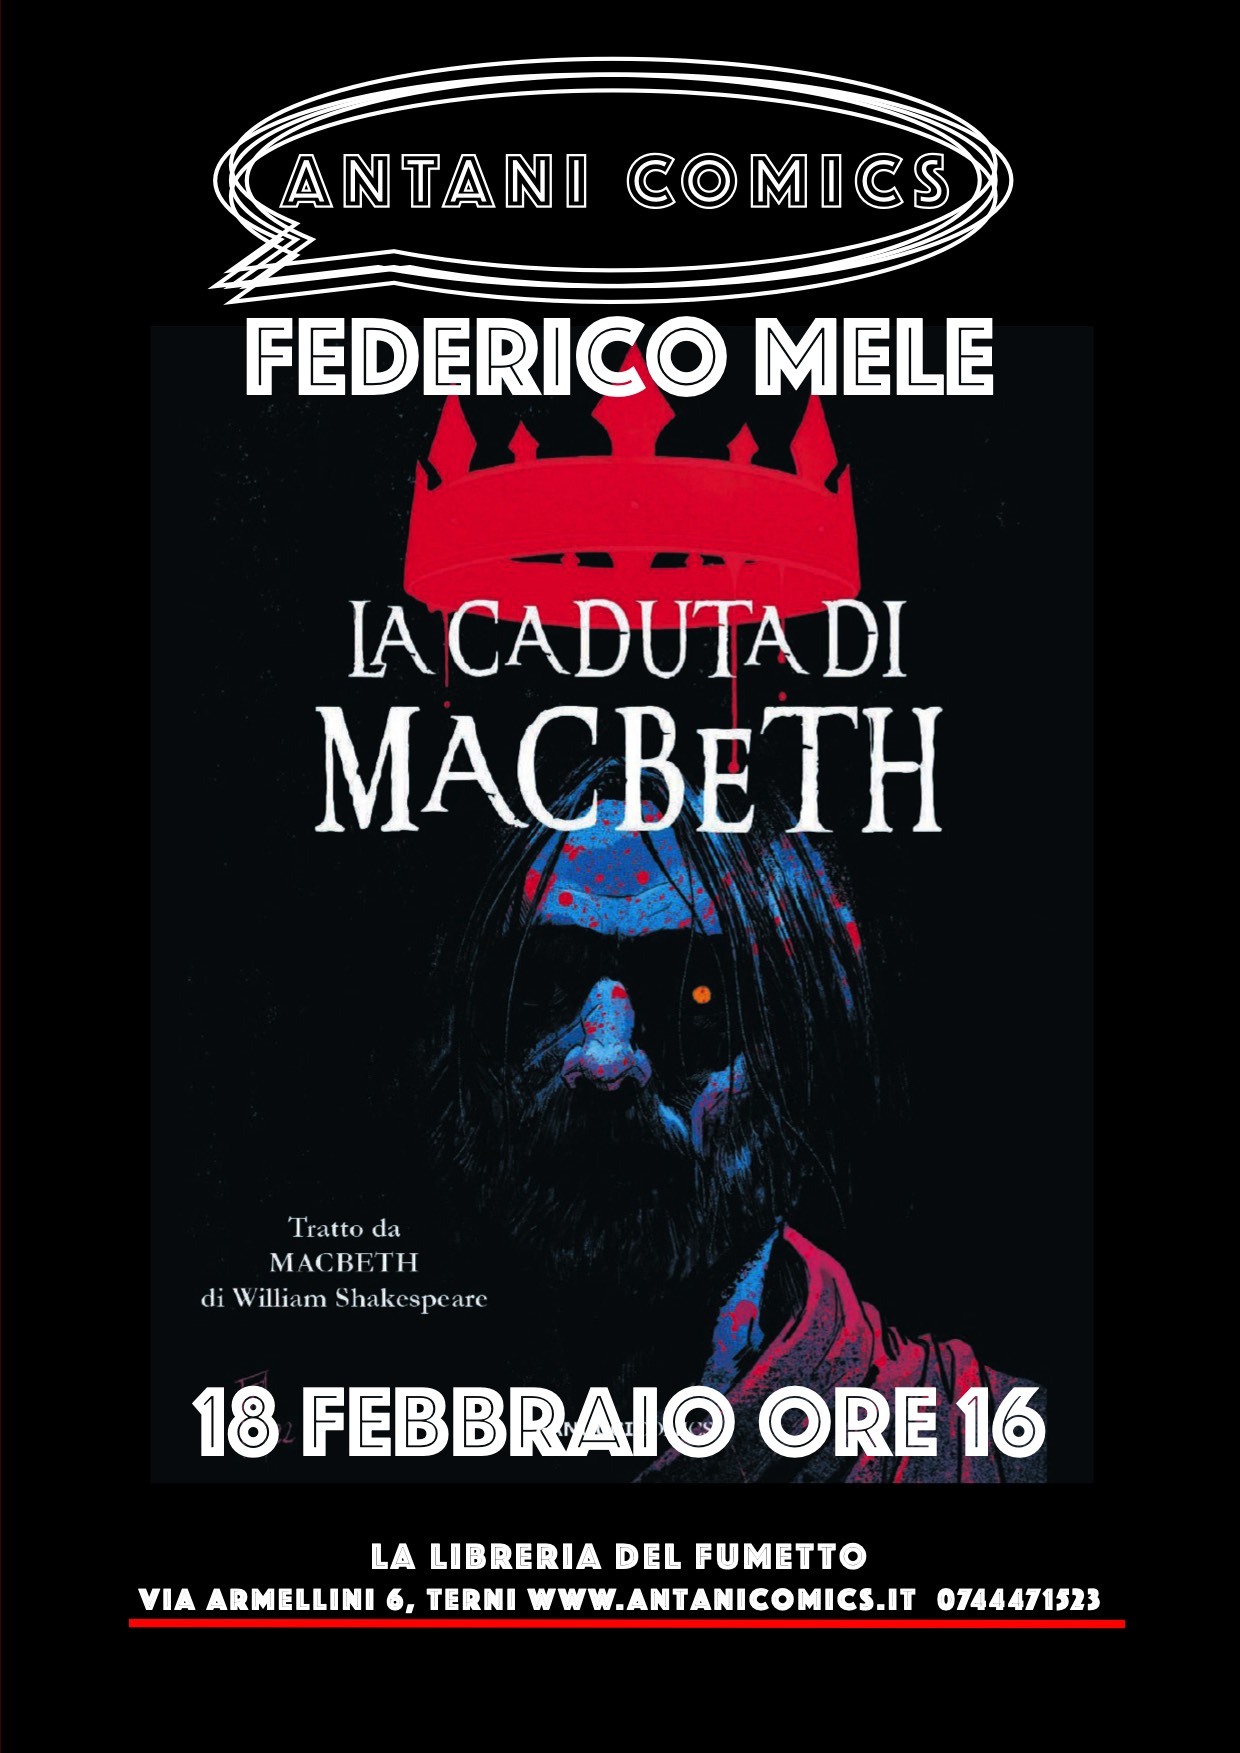 FEDERICO MELE presenta LA CADUTA DI MACBETH il 18 febbraio